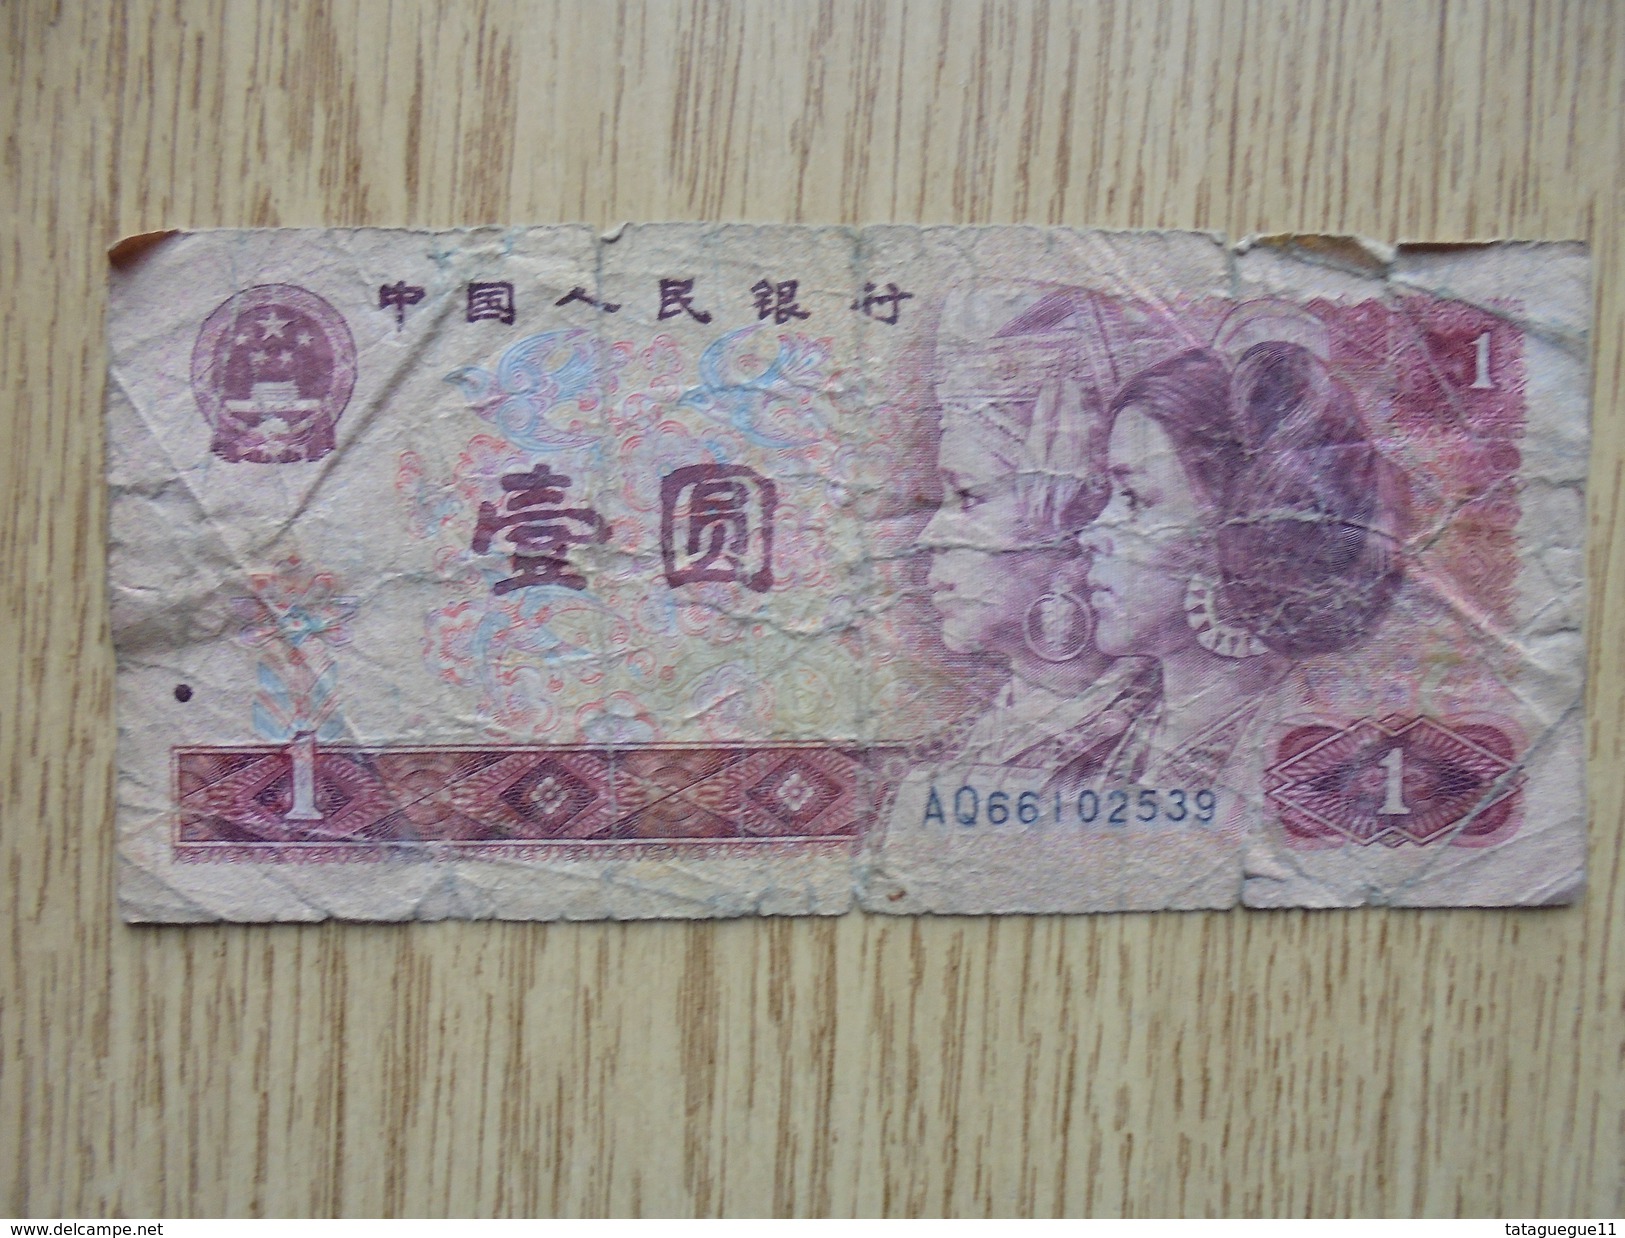 Ancien - Billet De Banque - ZHONGGUO RENMIN YINHANG 1 YI YUAN - 1980 - Autres - Asie